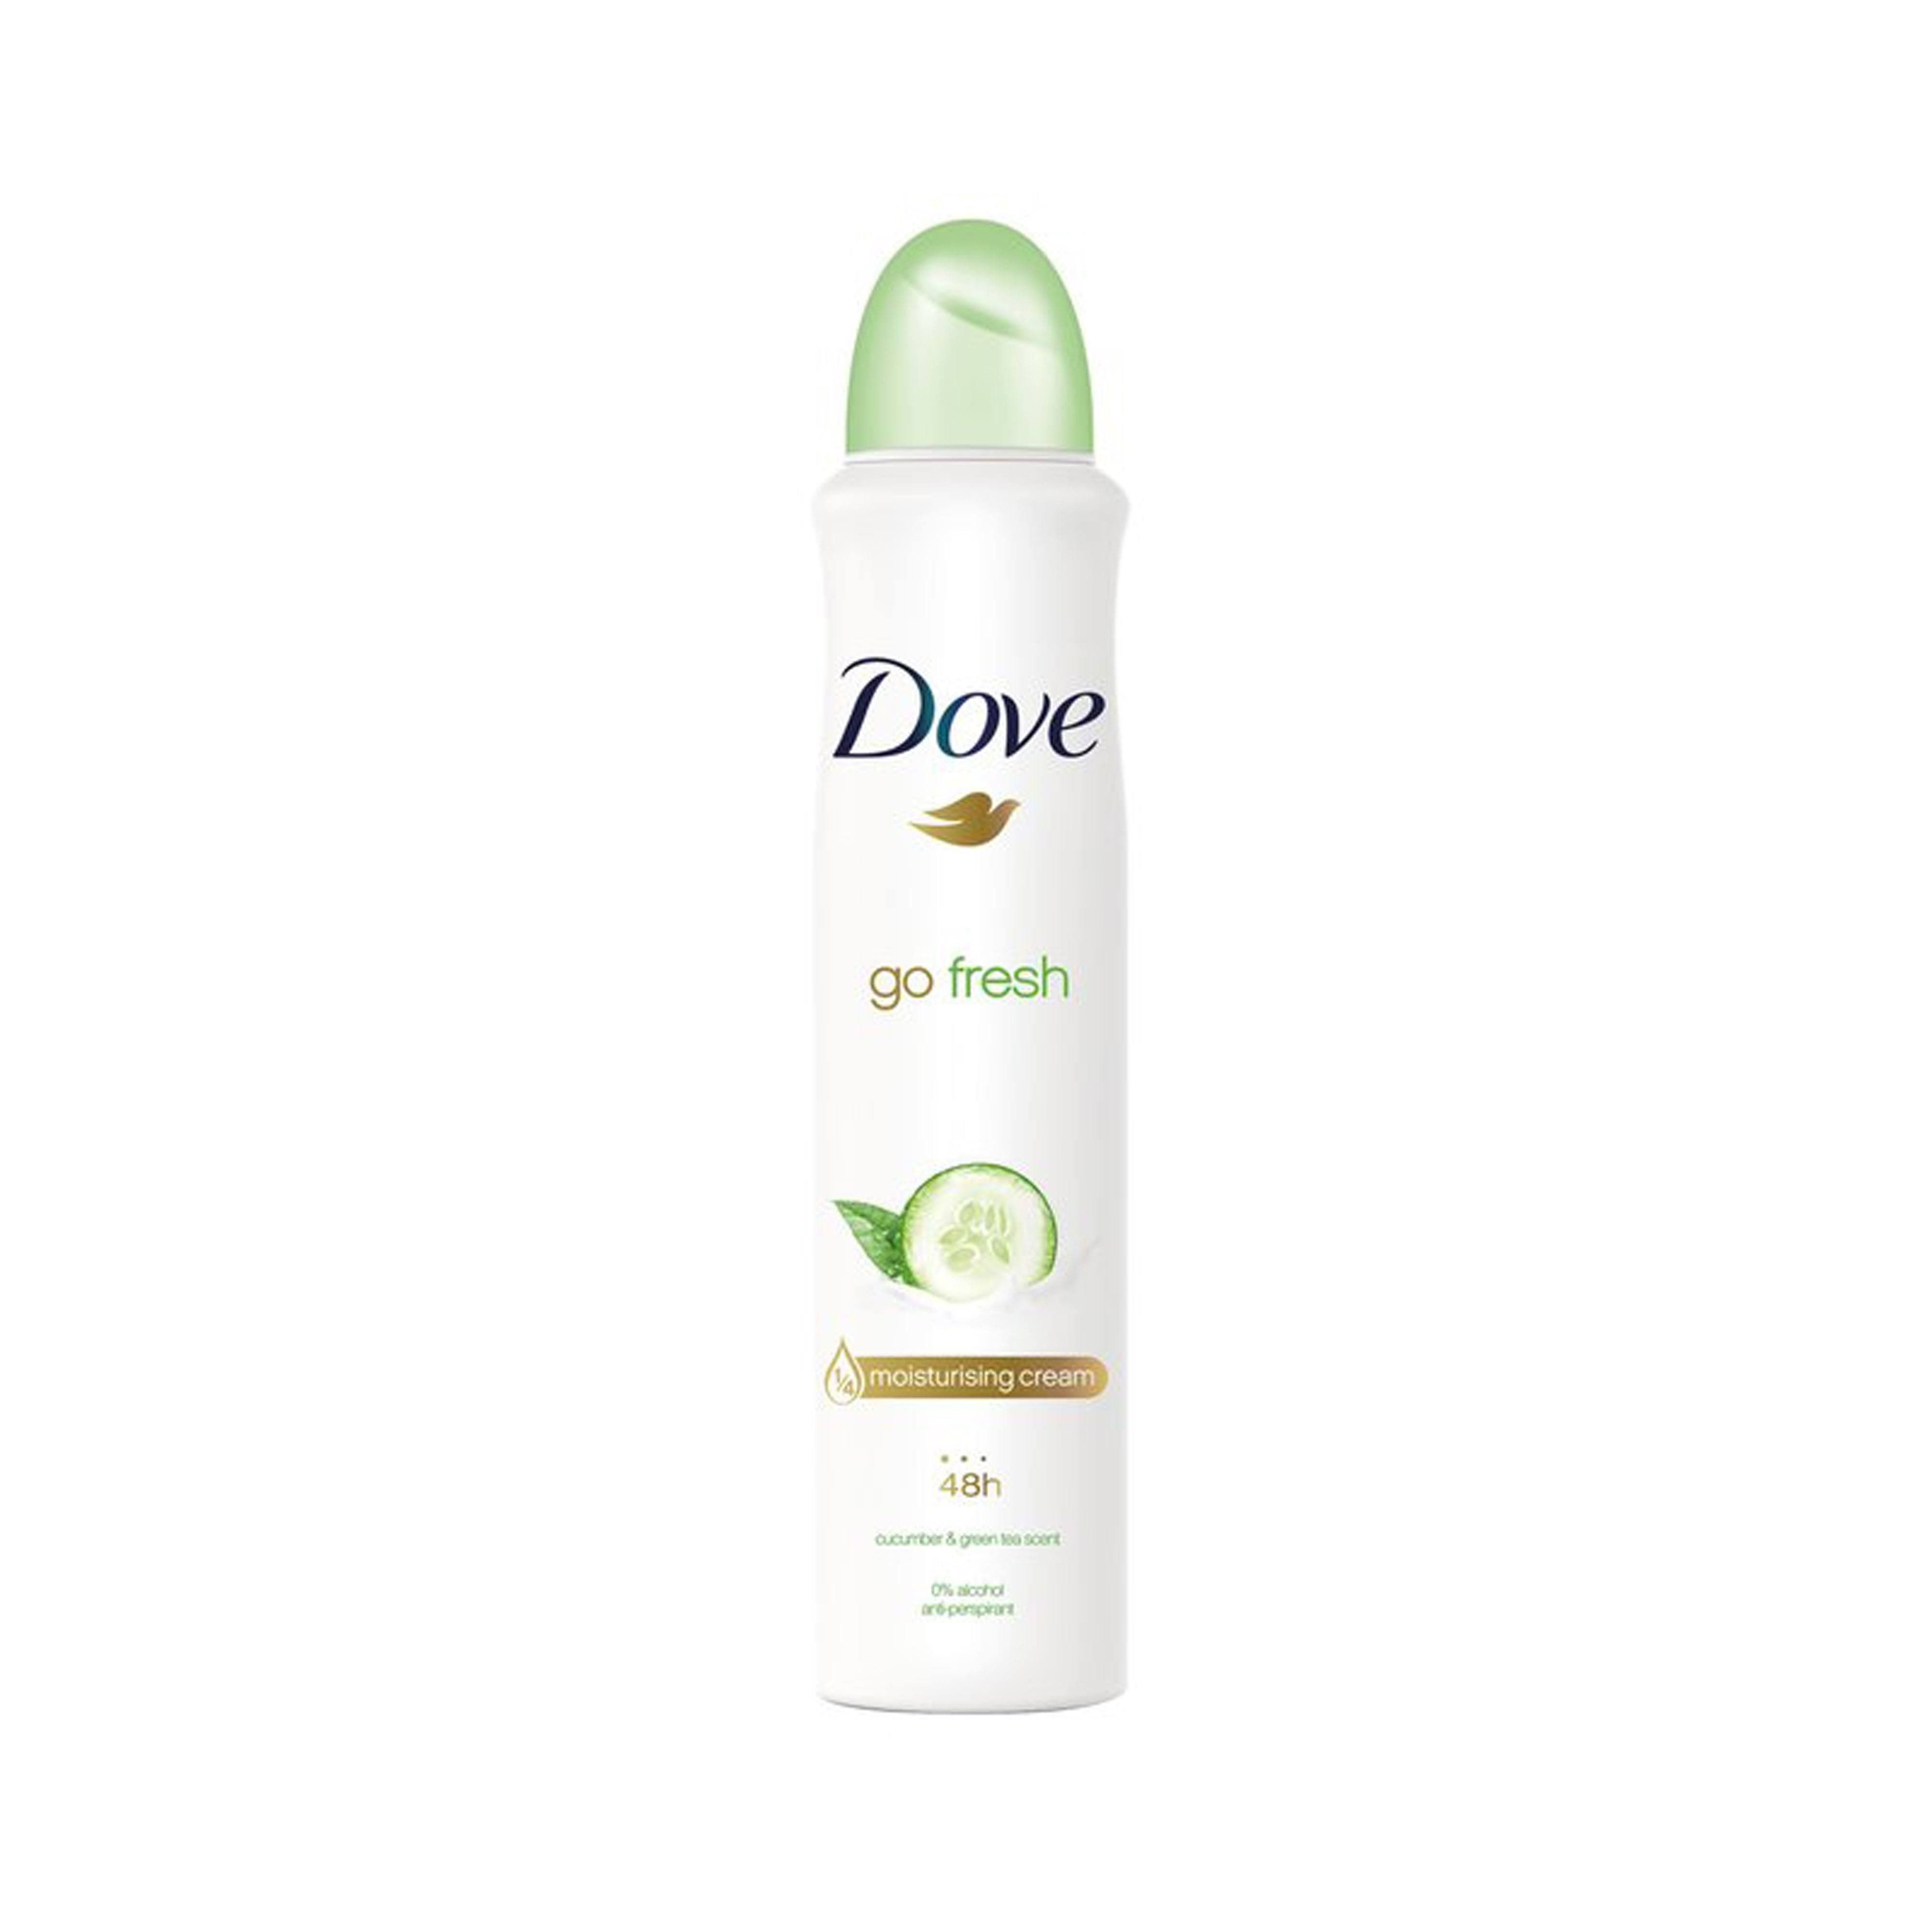 Dove Cucumber Anti Perspirant Deodorant - 250ml